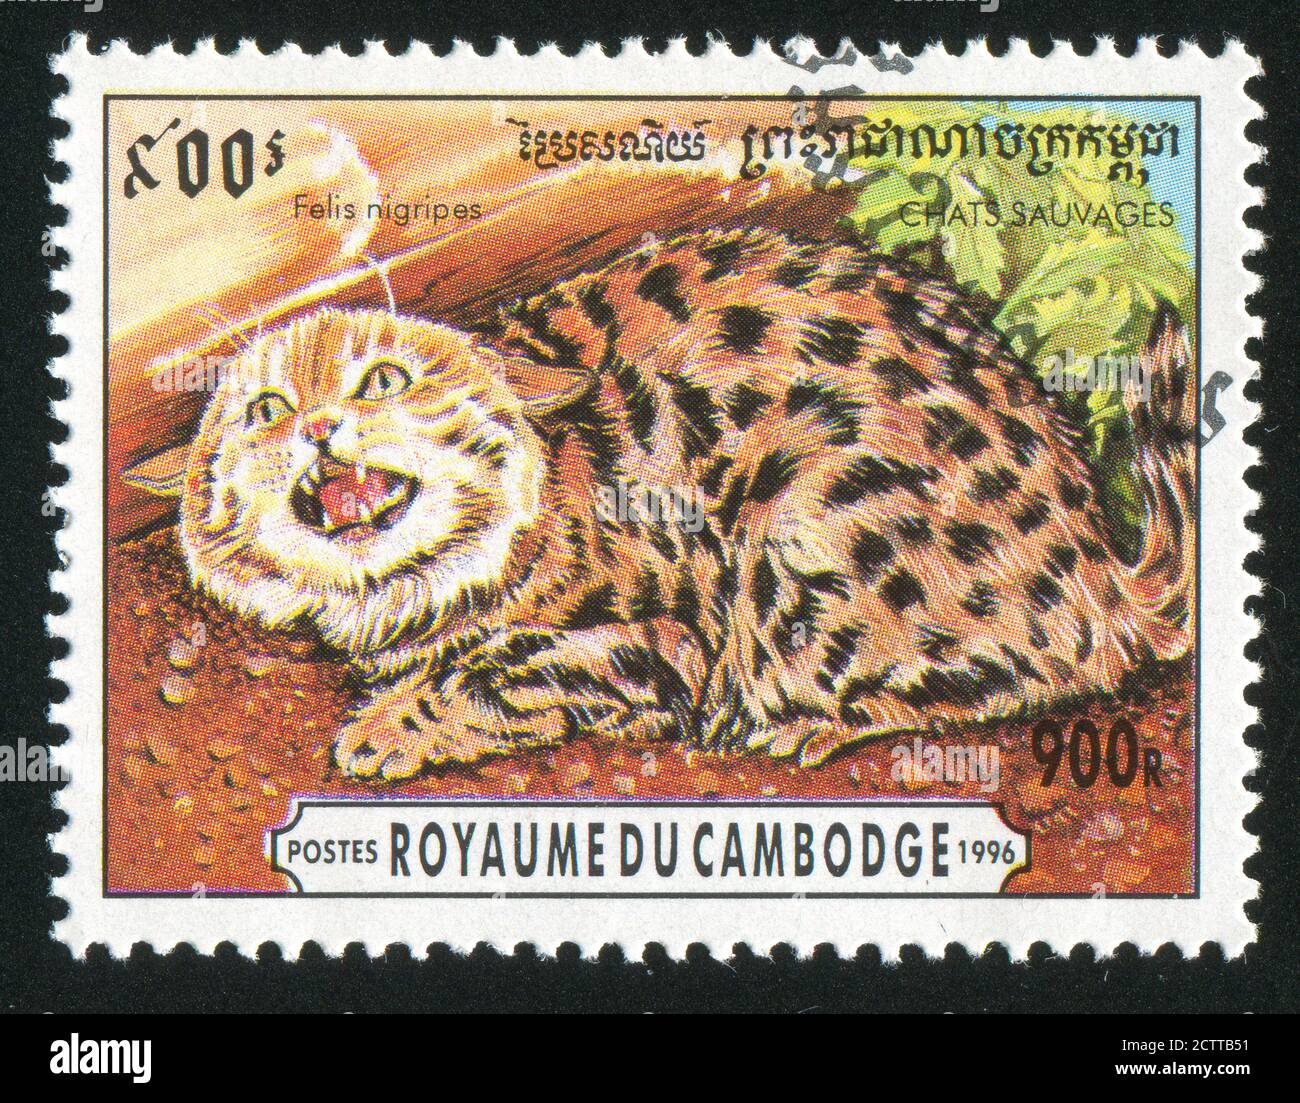 CAMBODGE VERS 1996: Timbre imprimé par le Cambodge, montre le chat à pieds noirs, vers 1996 Banque D'Images